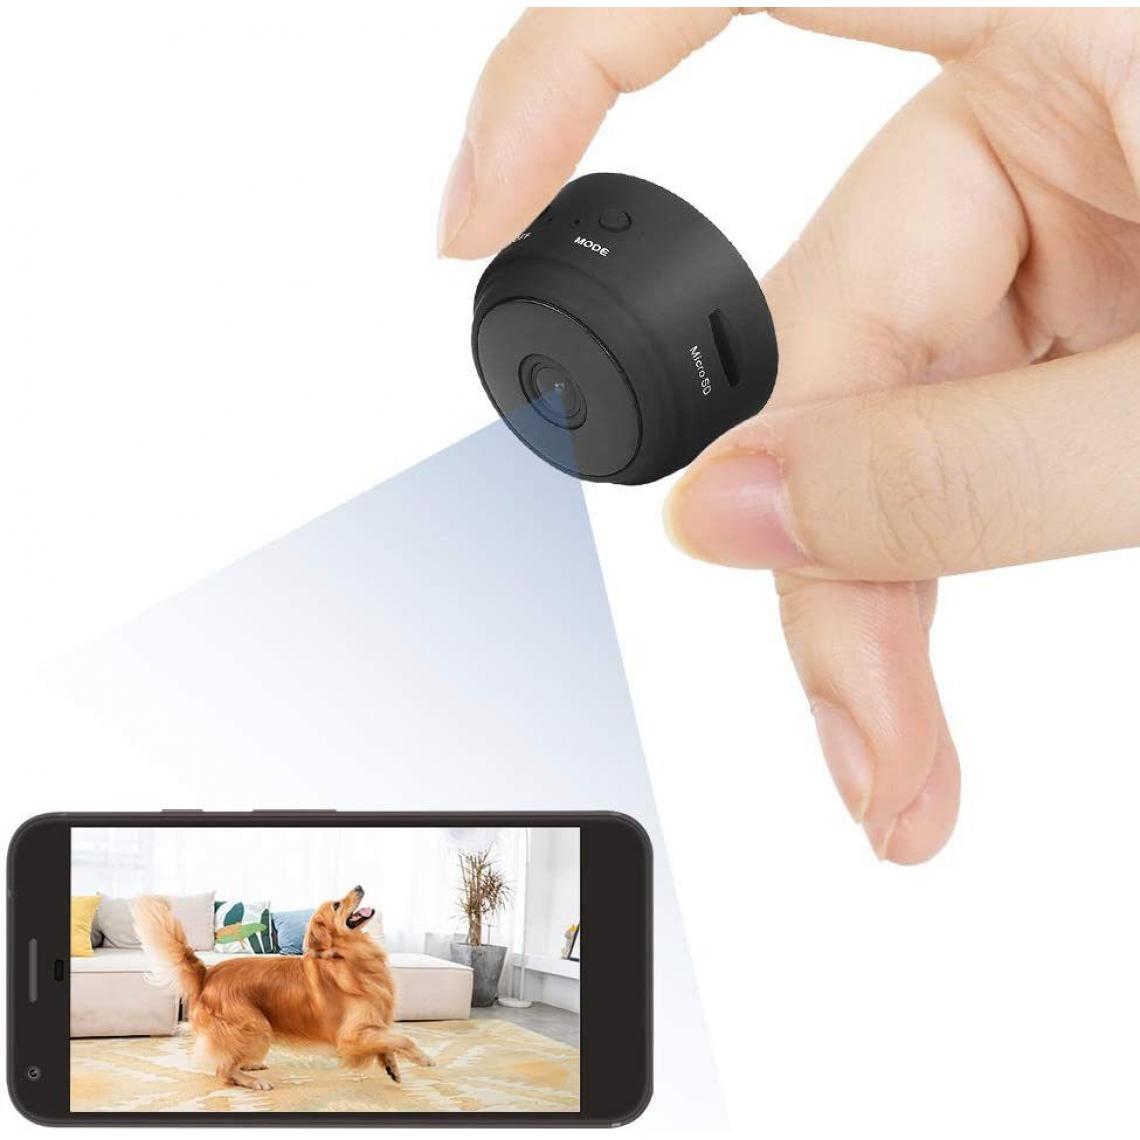 Chrono - Mini Camera Espion Caché Enregistreur Petite,Full HD 1080P Micro Camera de Surveillance WiFi,CameÌra Video Surveillance de Sécurité Bébé sans Fil Hidden Caméra Cachée,Interieur/Exterieur(noir) - Autres accessoires smartphone